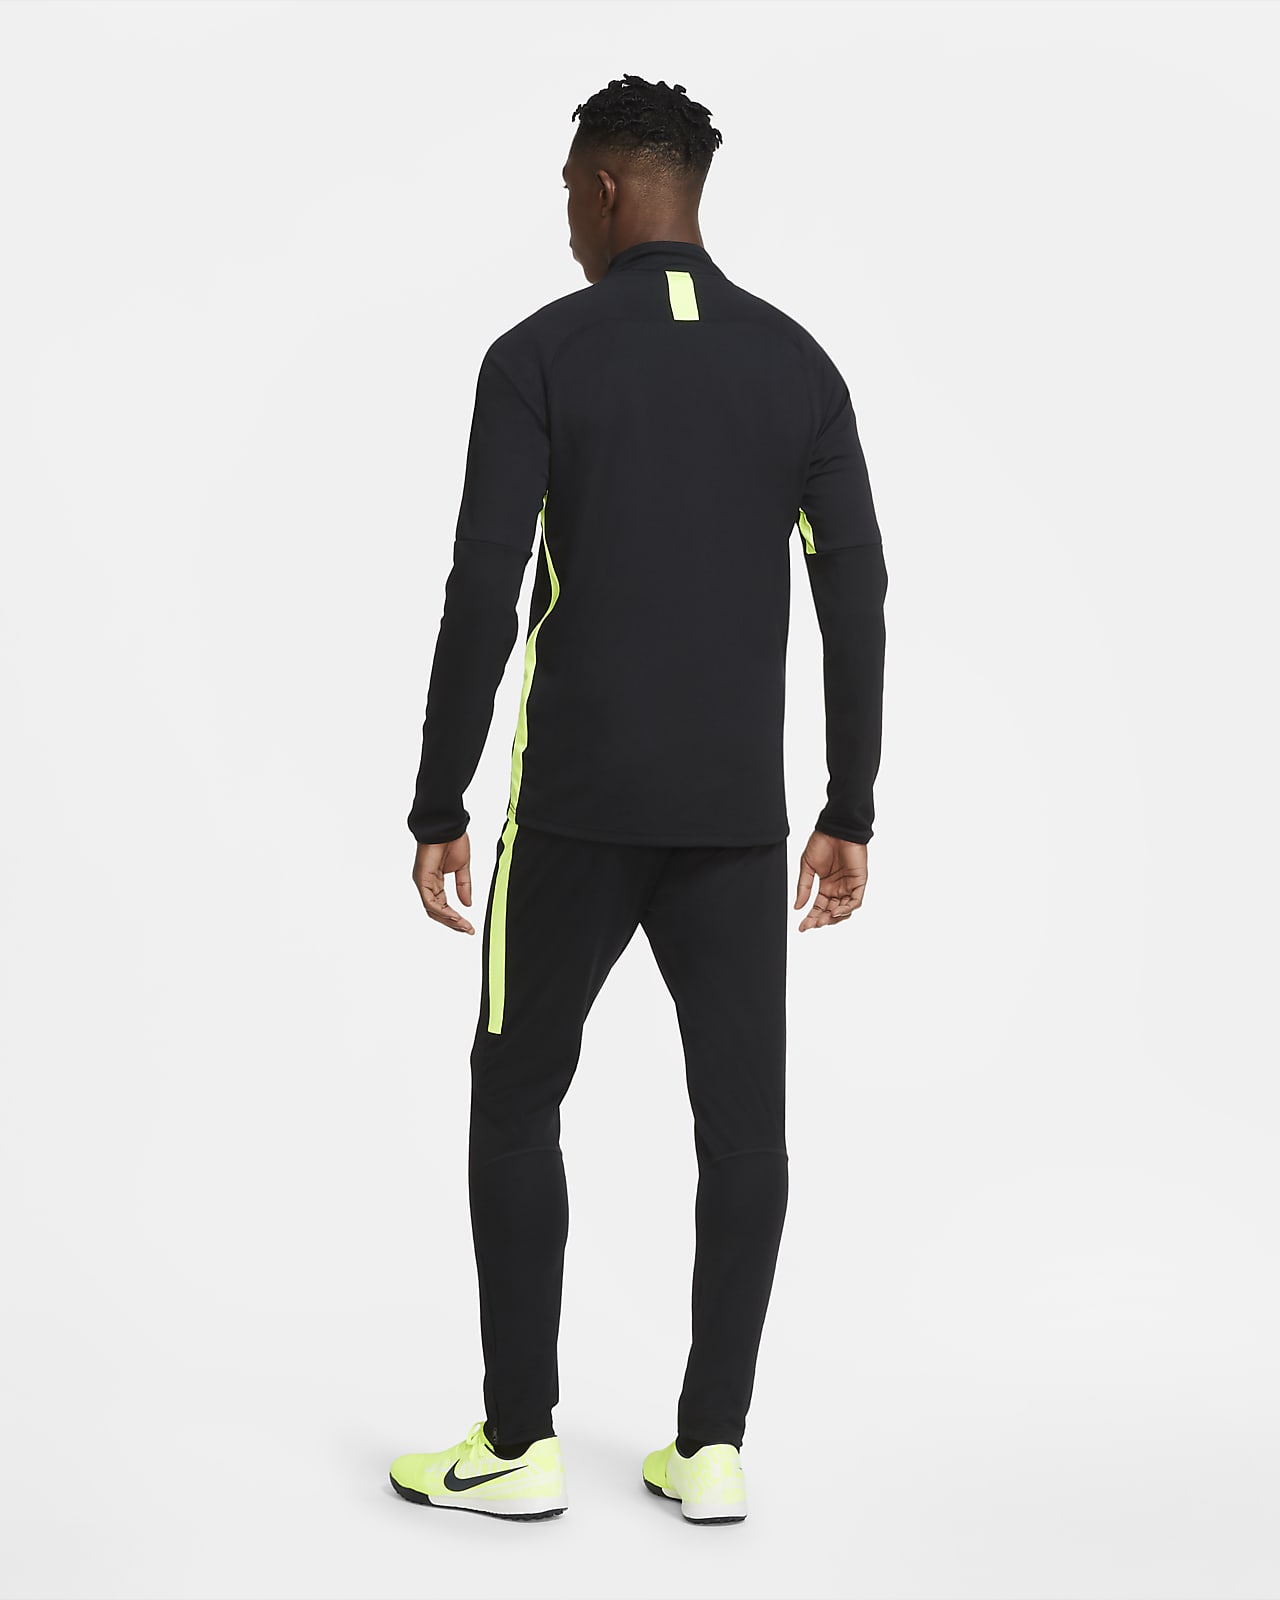 Nike Dri-FIT Running Calf Sleeves Size L Black One Pair - Conseil scolaire  francophone de Terre-Neuve et Labrador